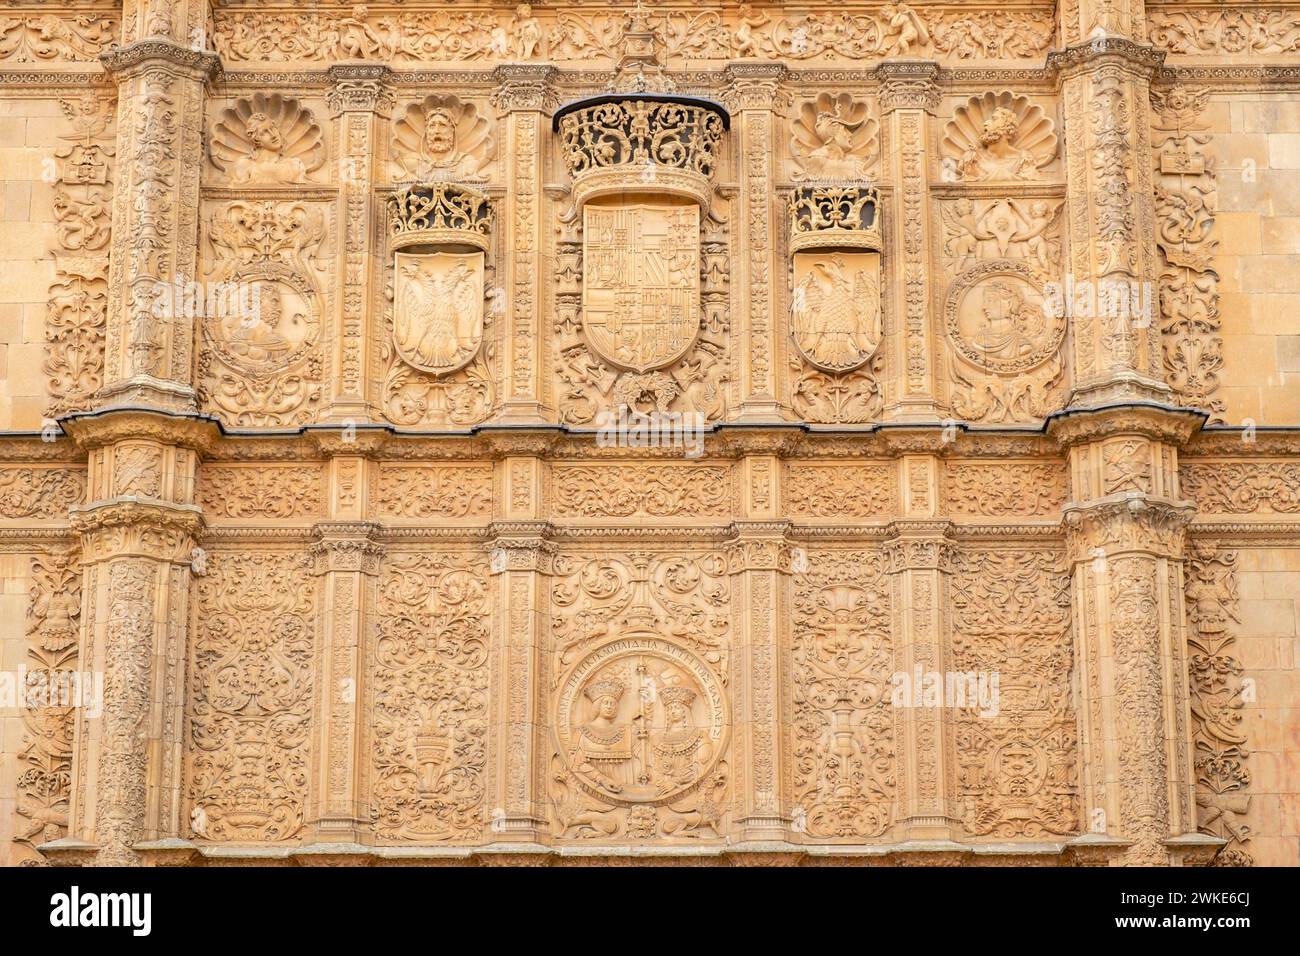 Fachada de la Universidad de Salamanca, 1529, estilo plateresco, Salamanca, comunidad Autónoma de Castilla y León, España. Foto de stock